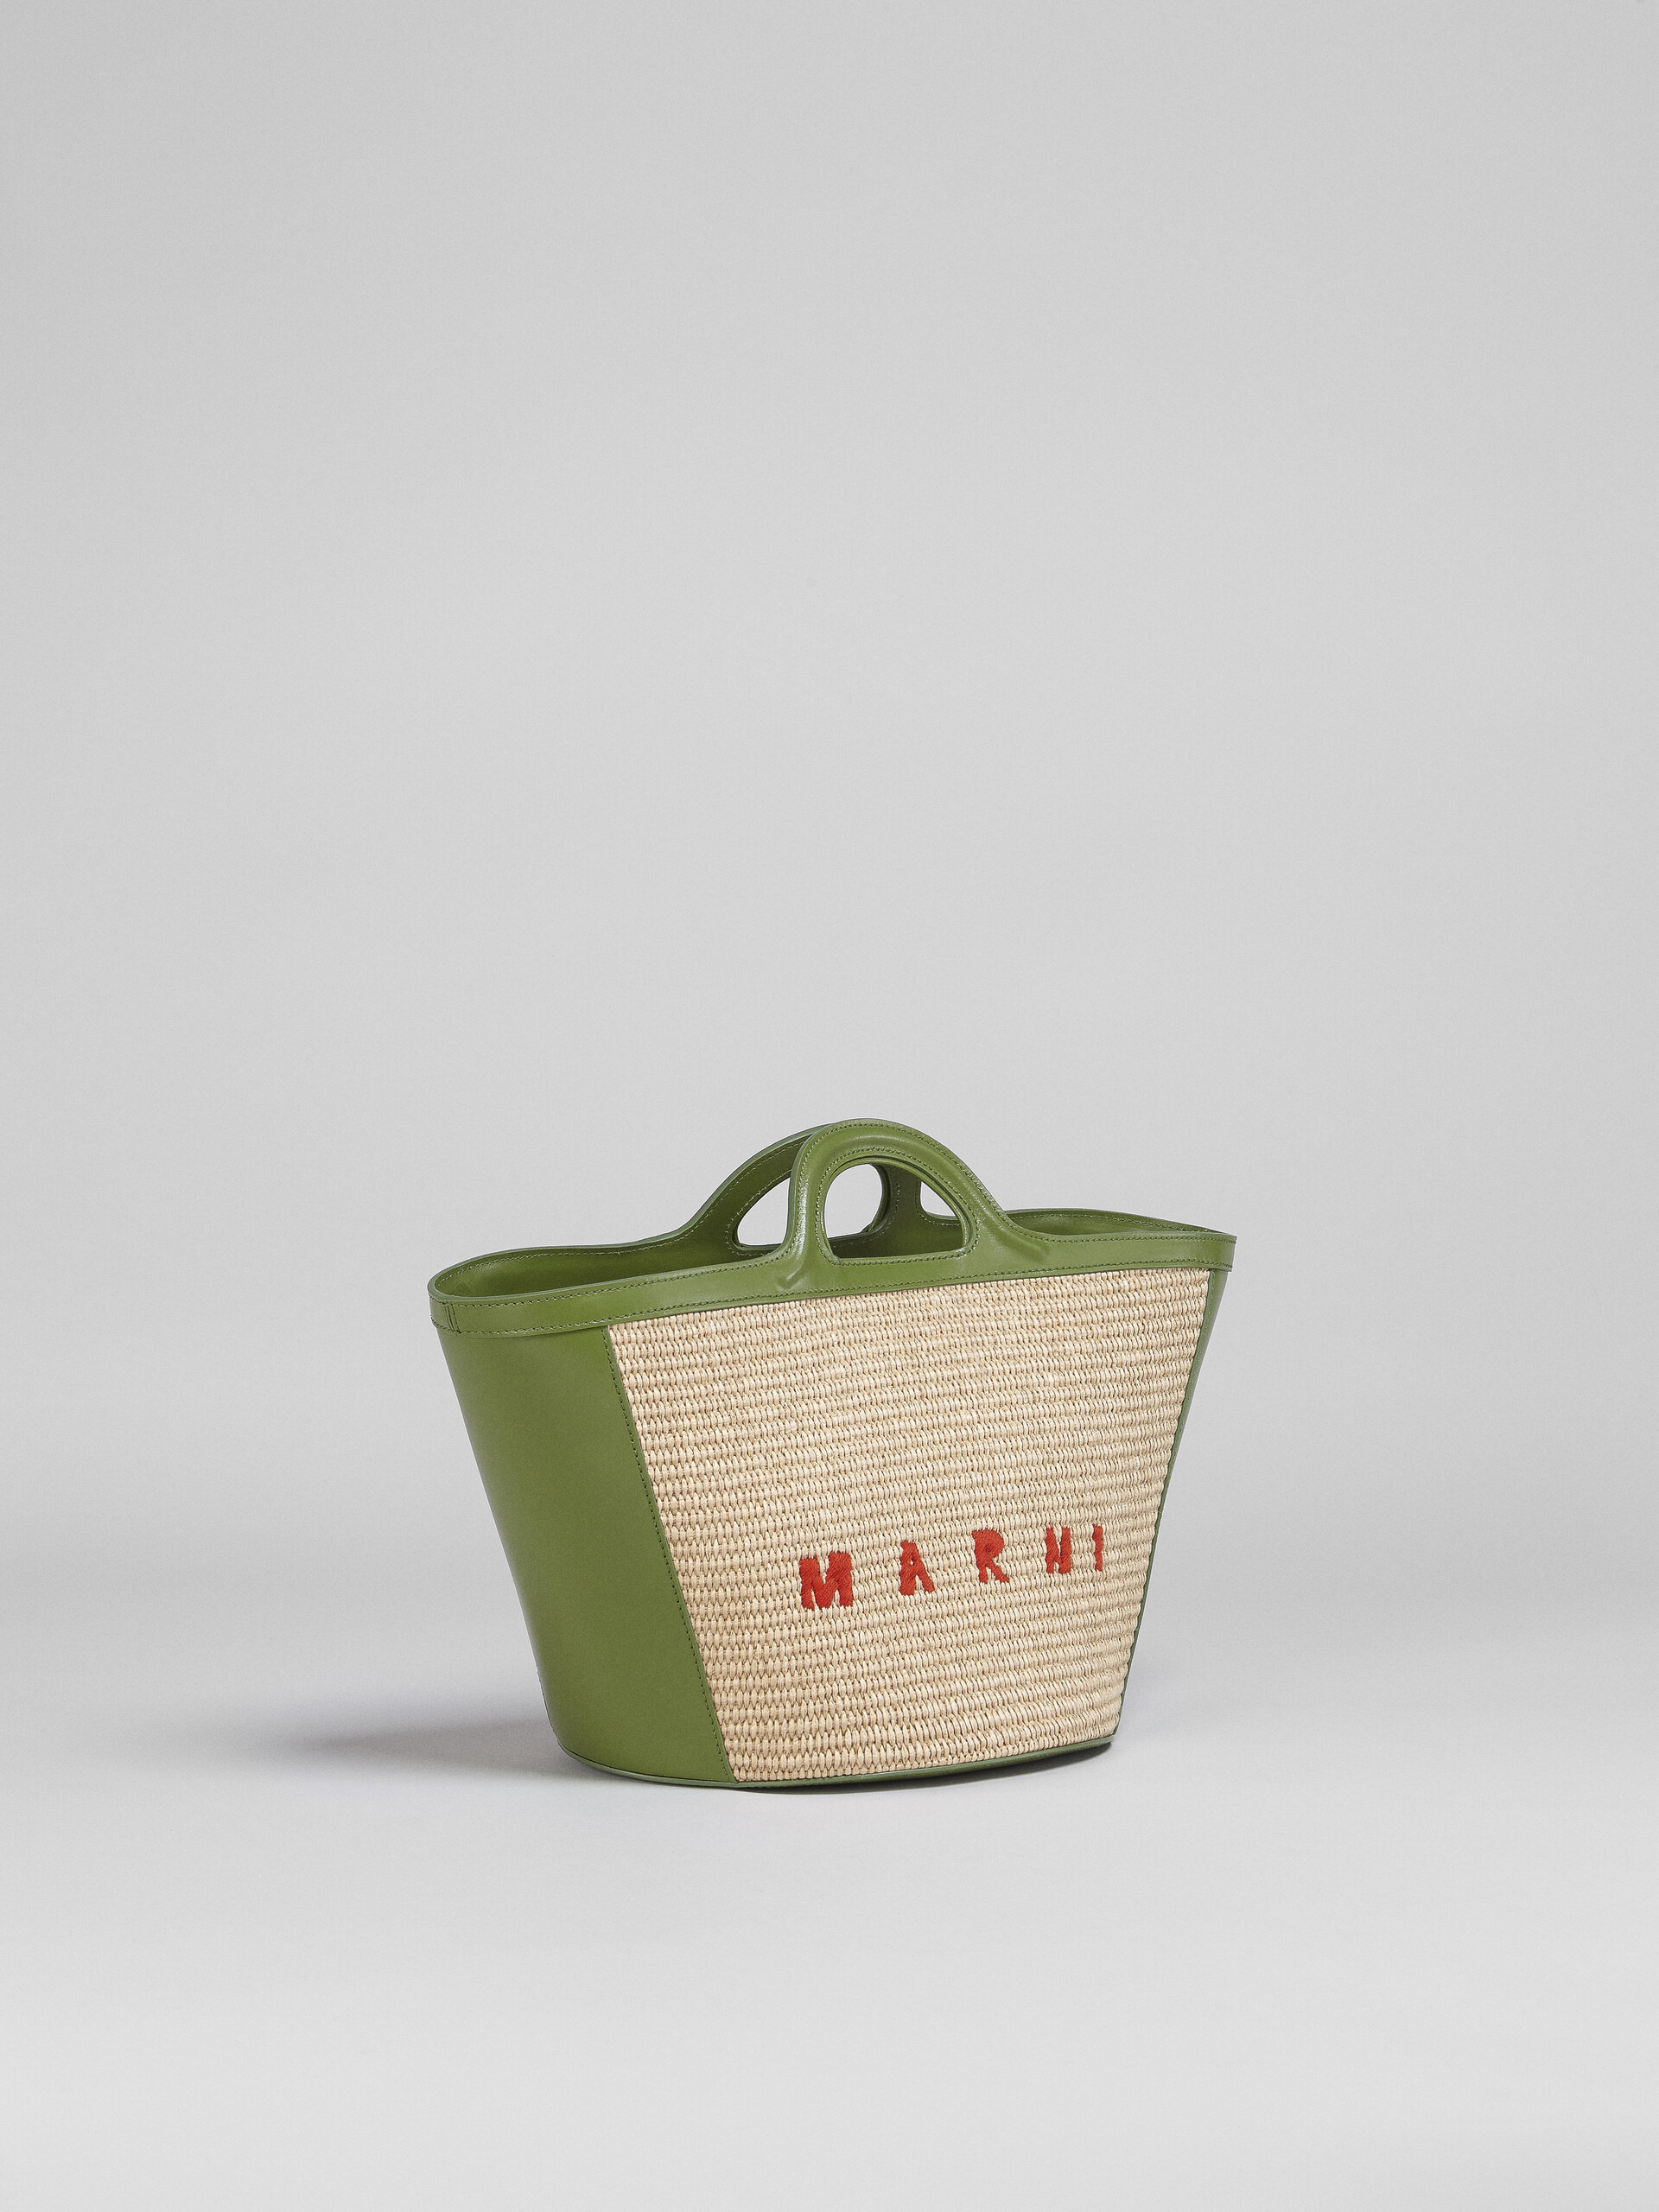 Marni Tropicalia Small Bag